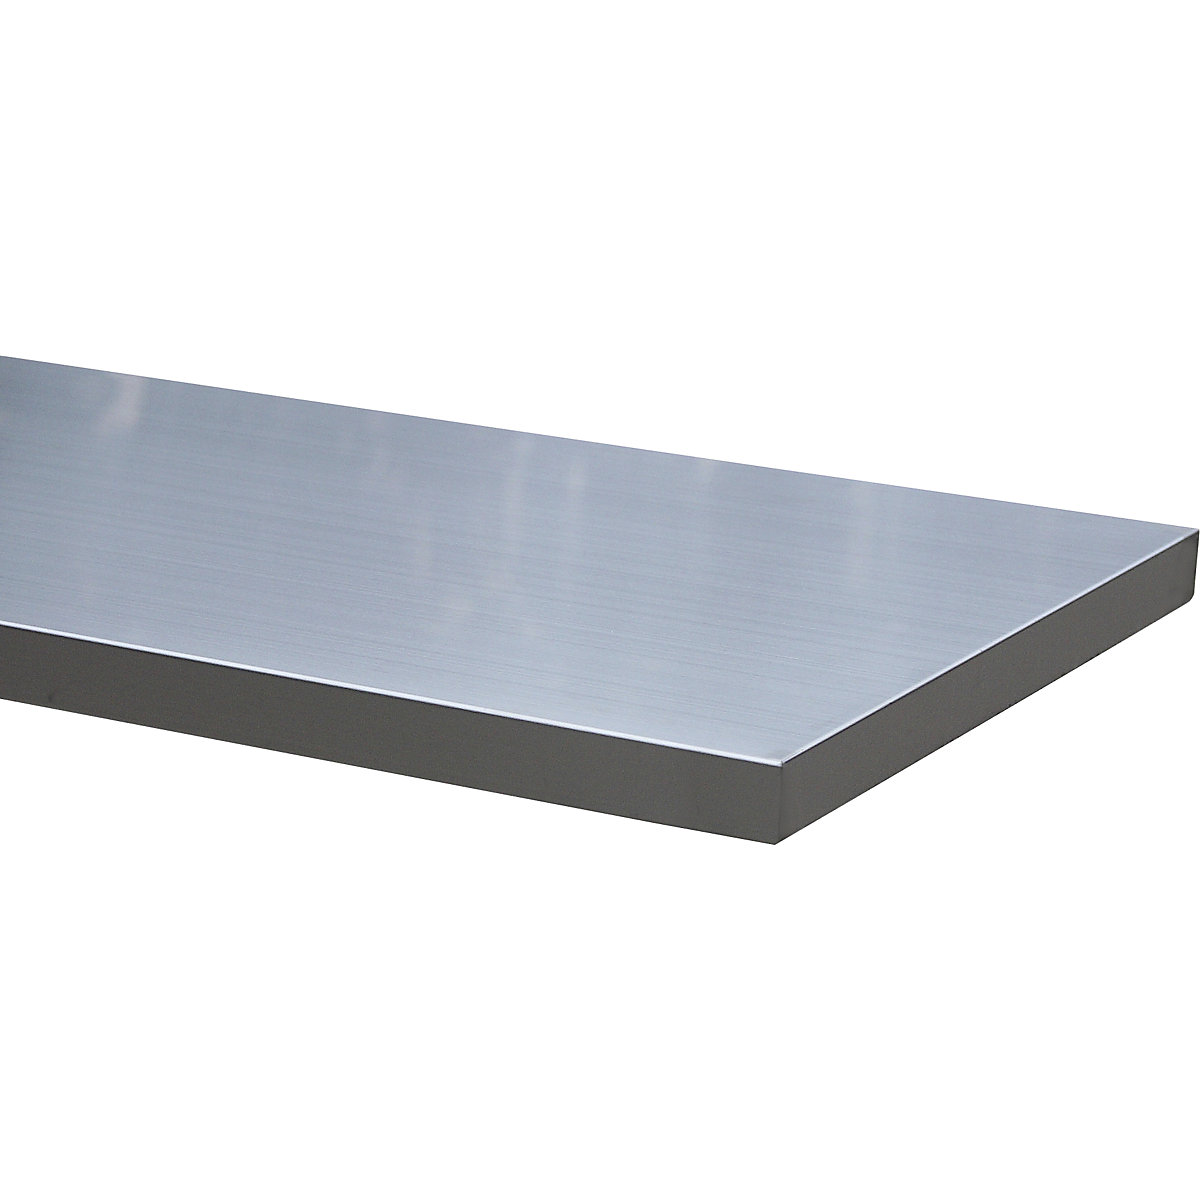 Stainless steel worktop